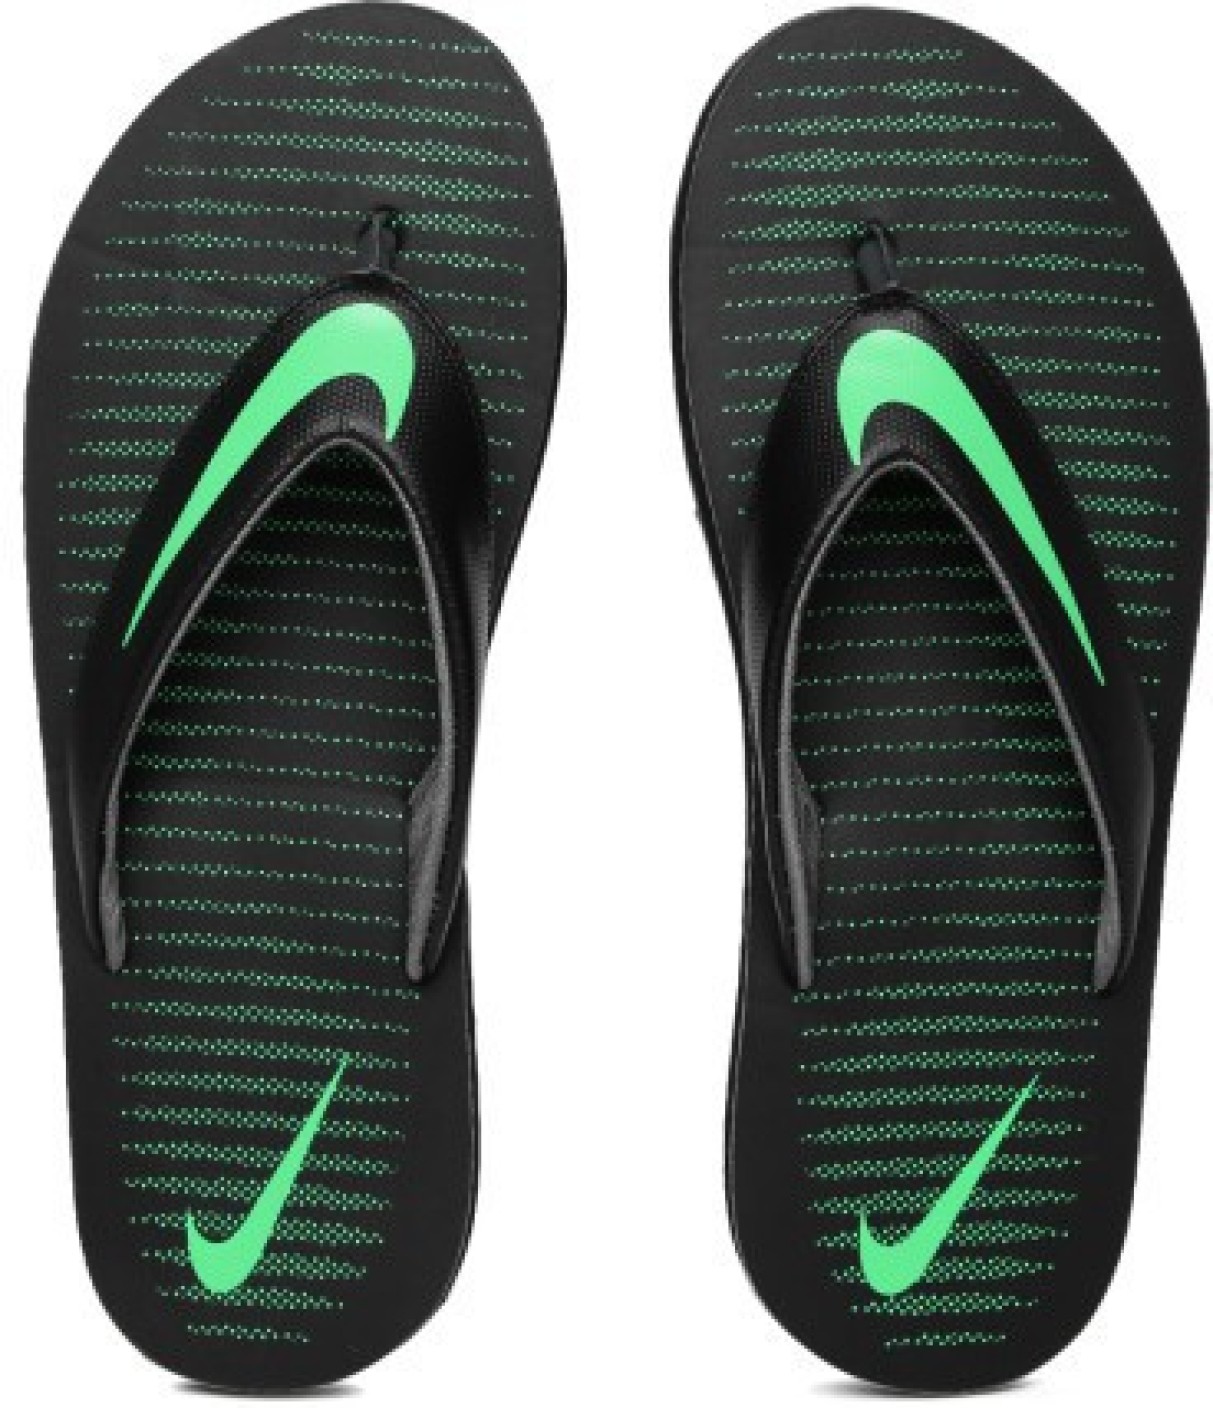 Nike CHROMA THONG 5 Flip Flops - Buy BLACK/ELECTRO GREEN-DARK GREY ...